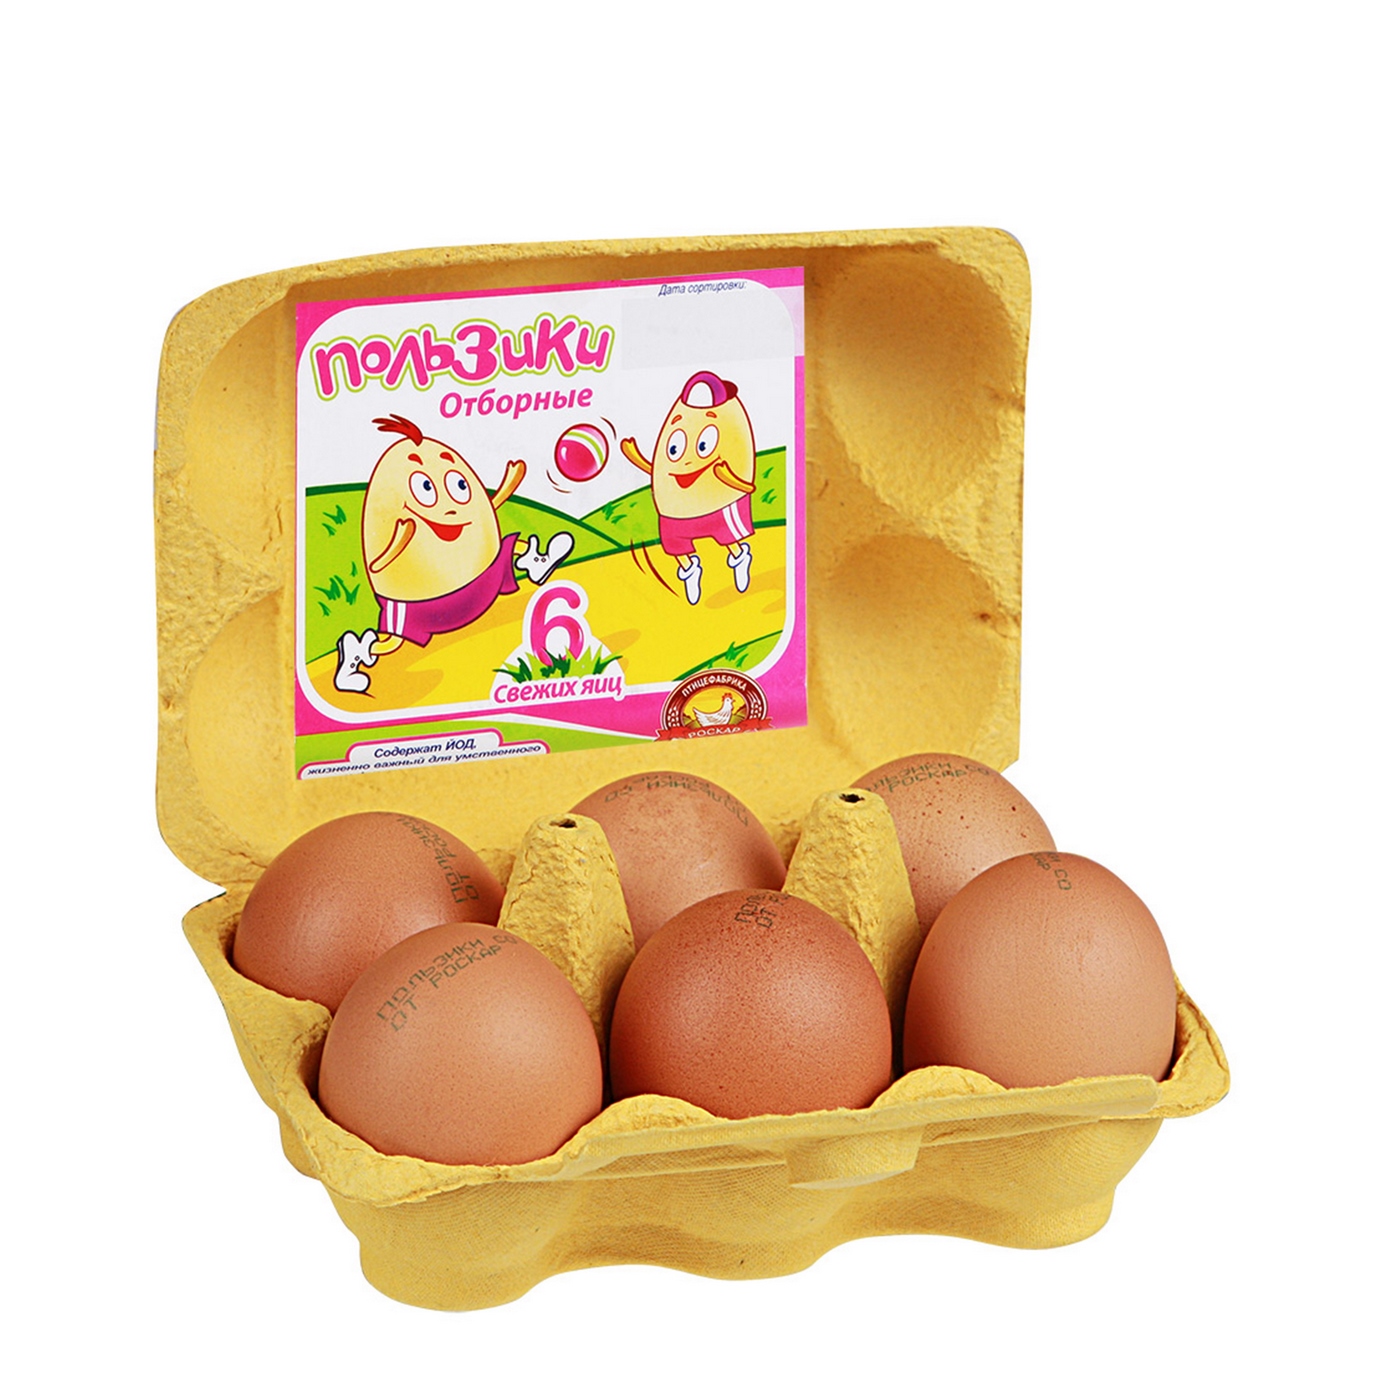 Купить яйцо детям. Яйца пользики. Упаковка для яиц. Яйца куриные в упаковке. Упаковка для яиц 6 штук.